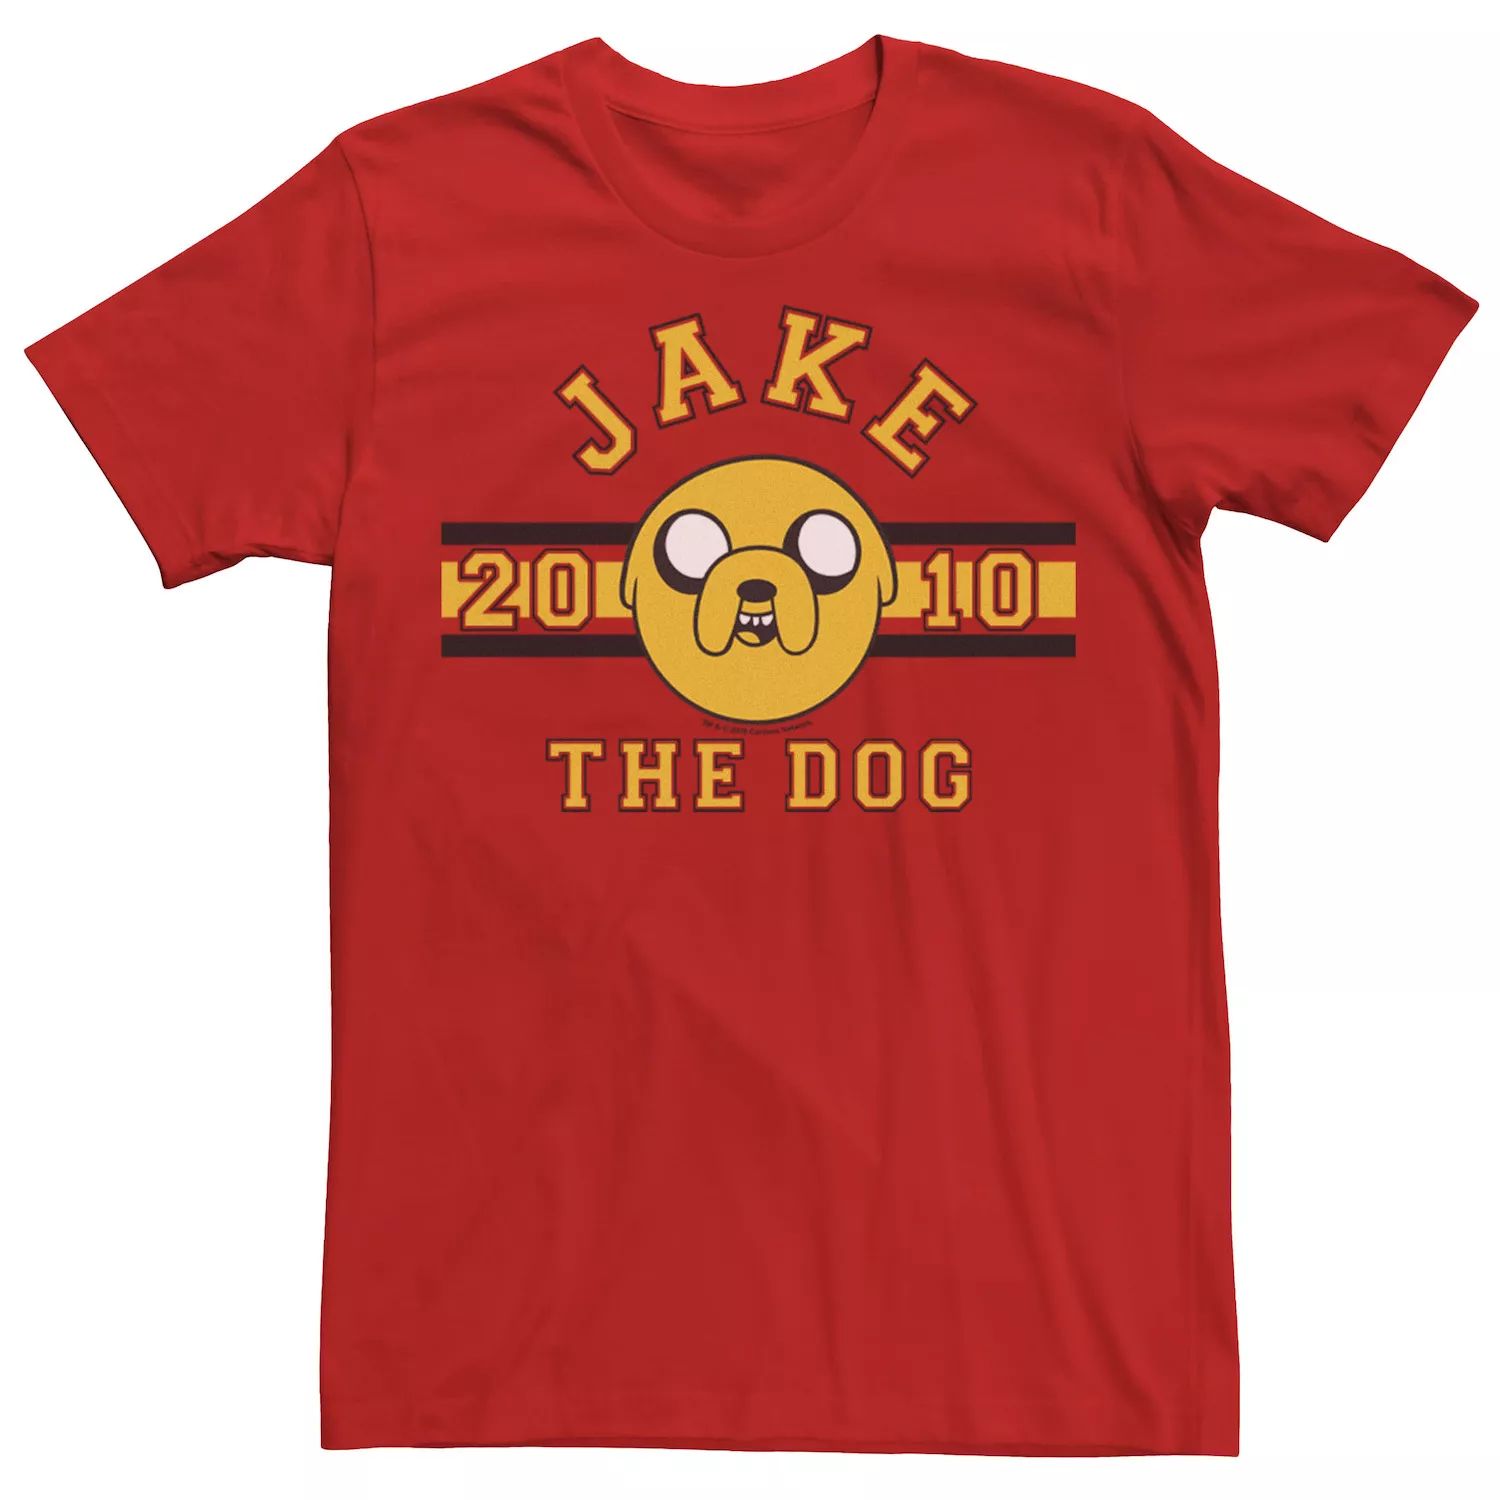 Мужская футболка с рисунком «Время приключений Джейк Пес 2010» Licensed Character, красный мужская футболка пес бульдог m красный